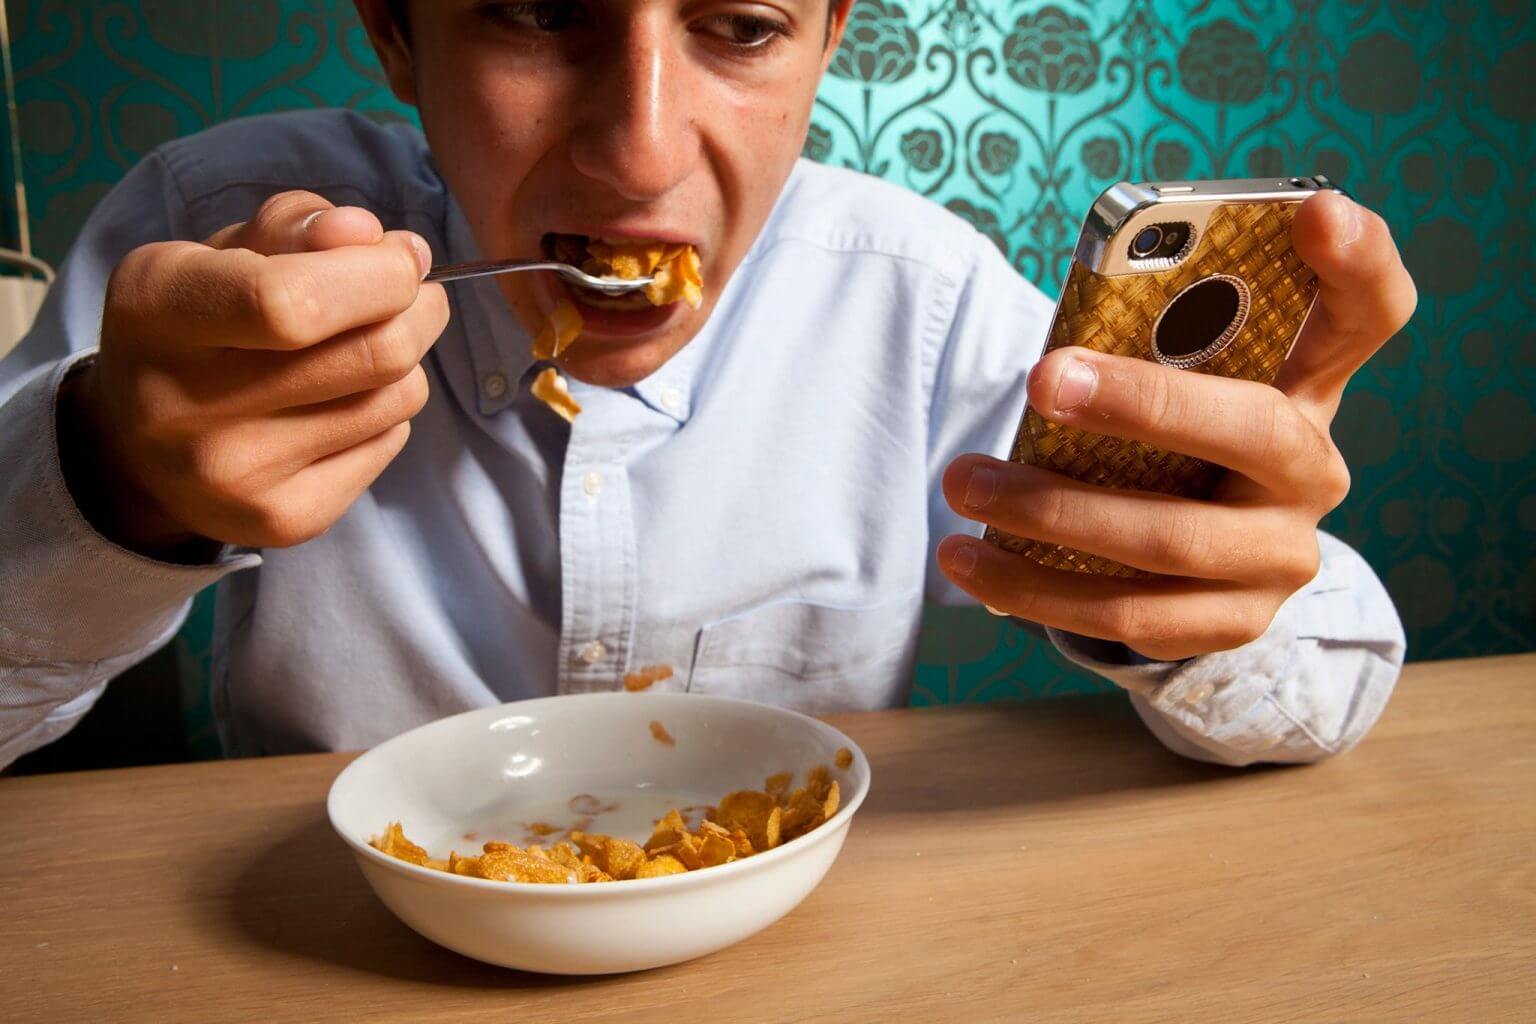 Мужчина был зависим от бывшей. Кушает с телефоном. Человек кушает. Человек с мобильником за едой. Человек кушает с телефоном.